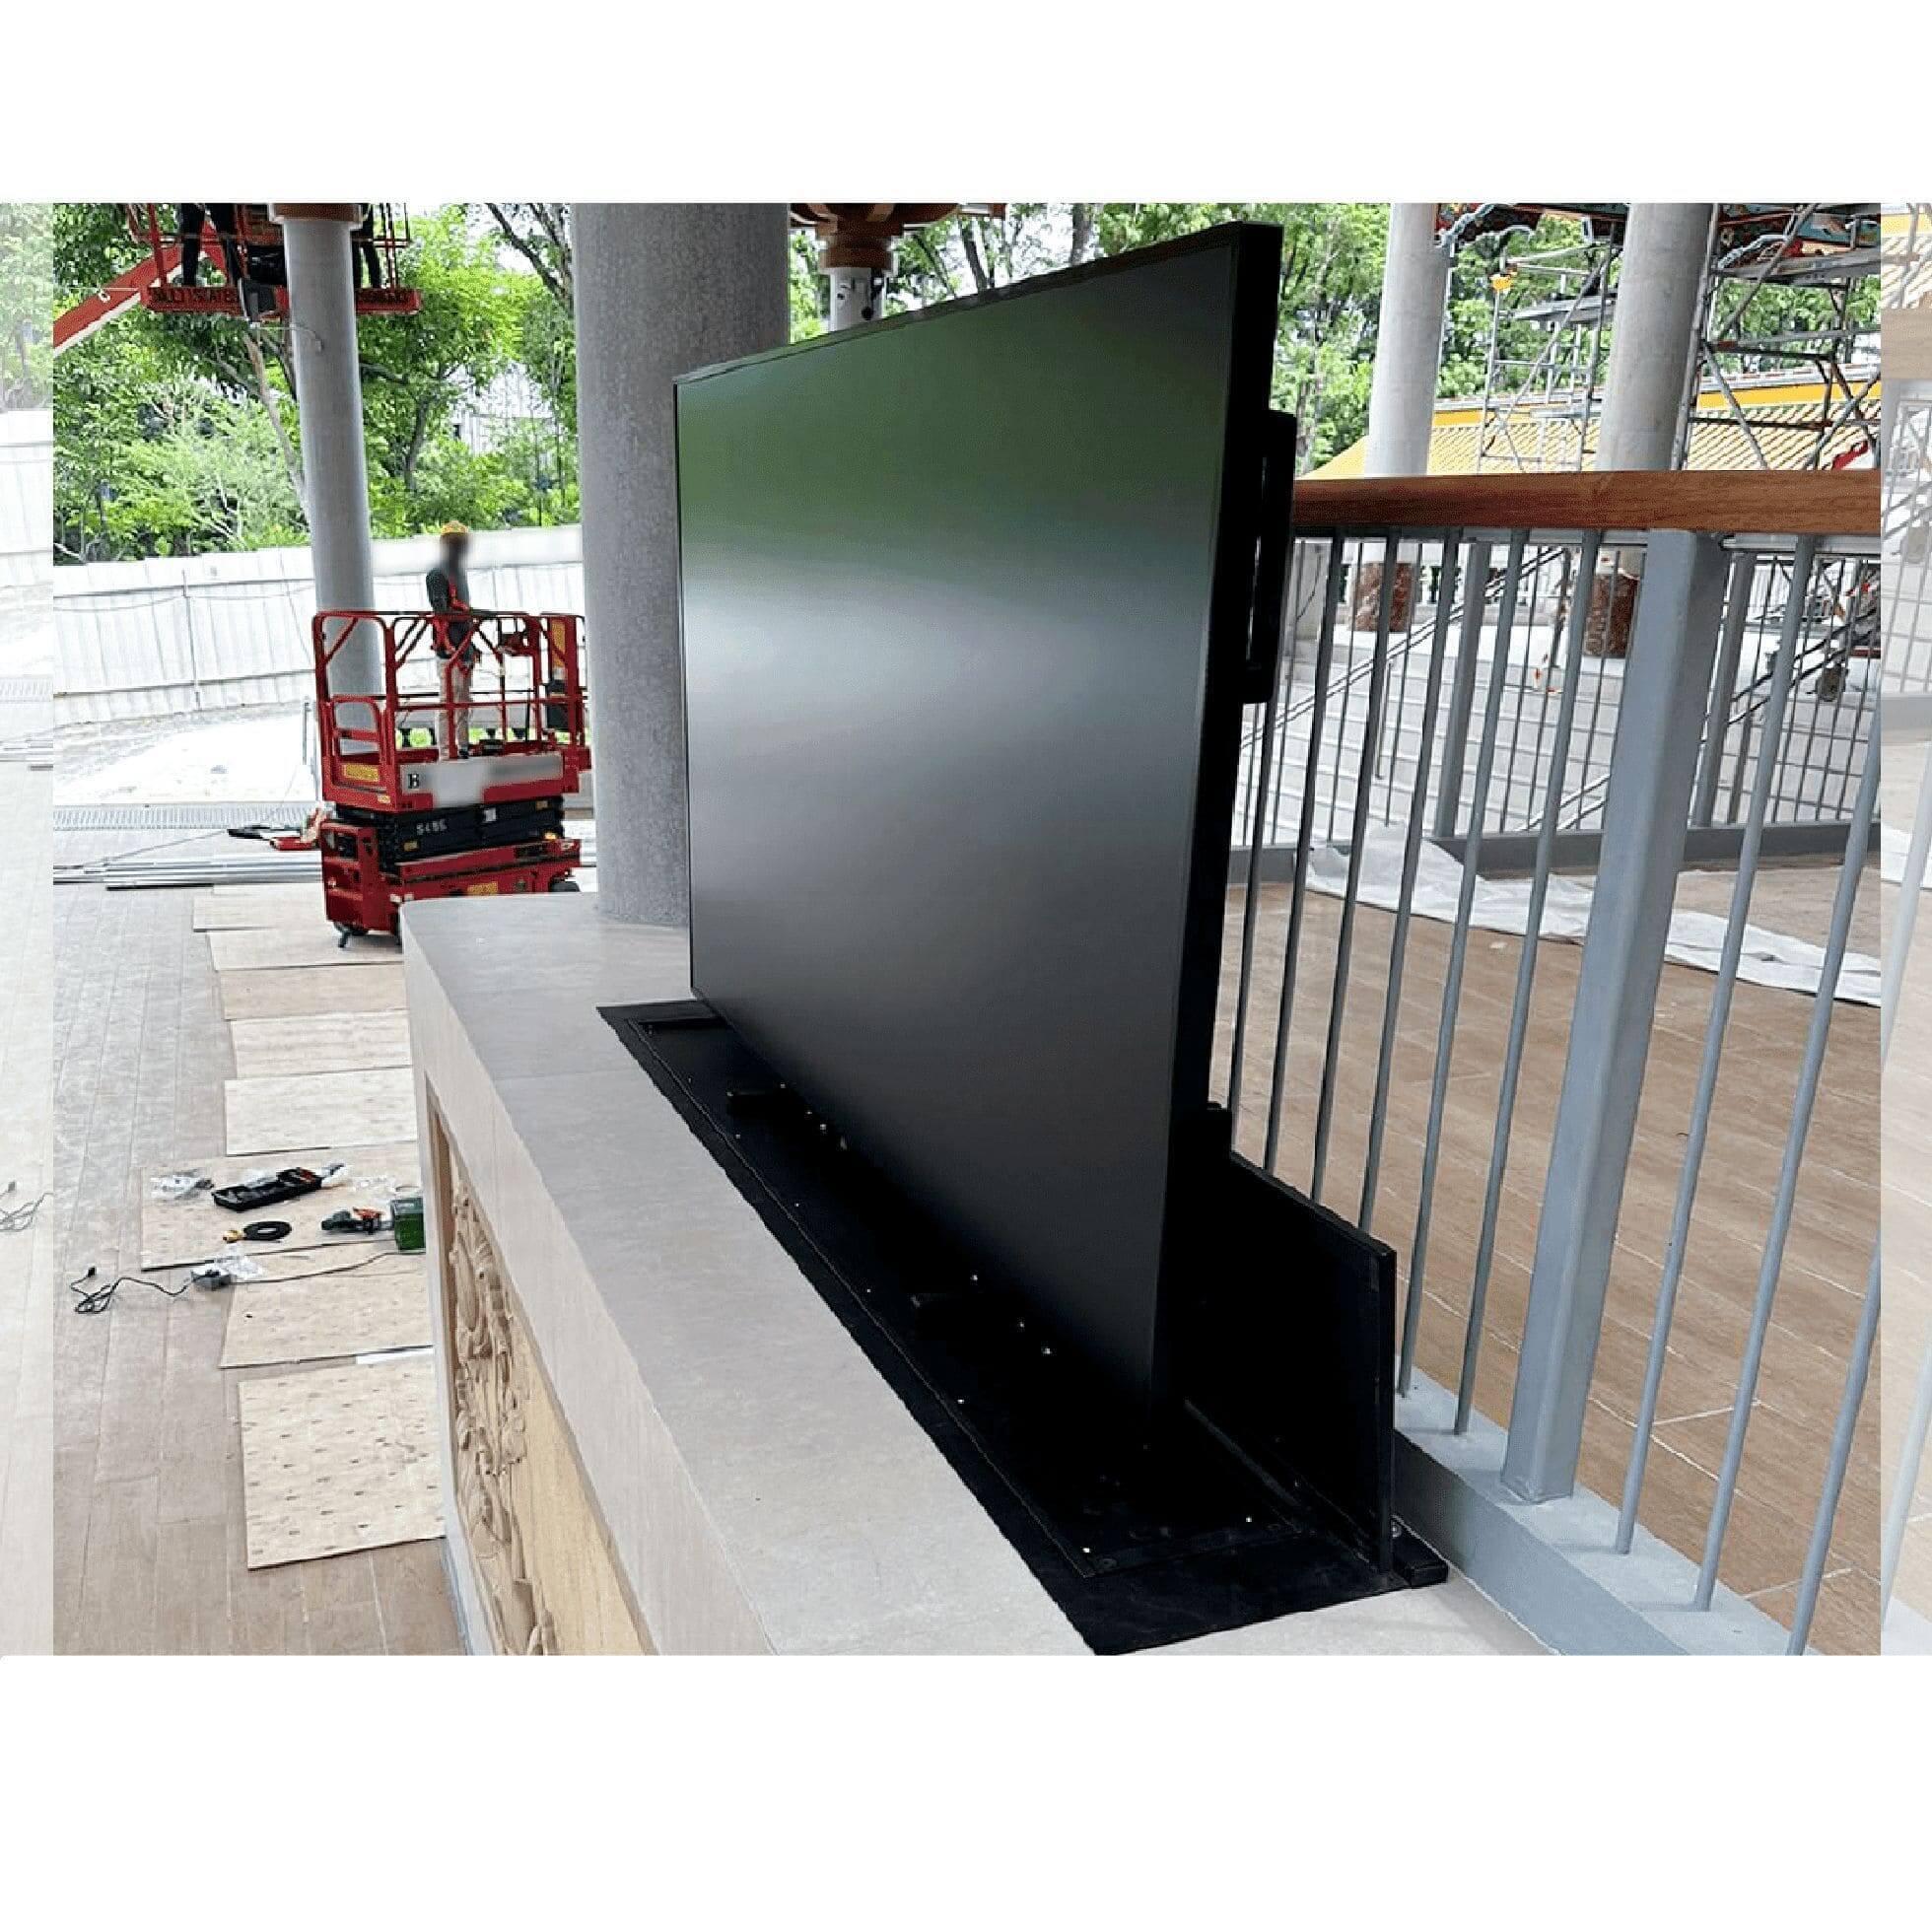 Motorized TV Lift System